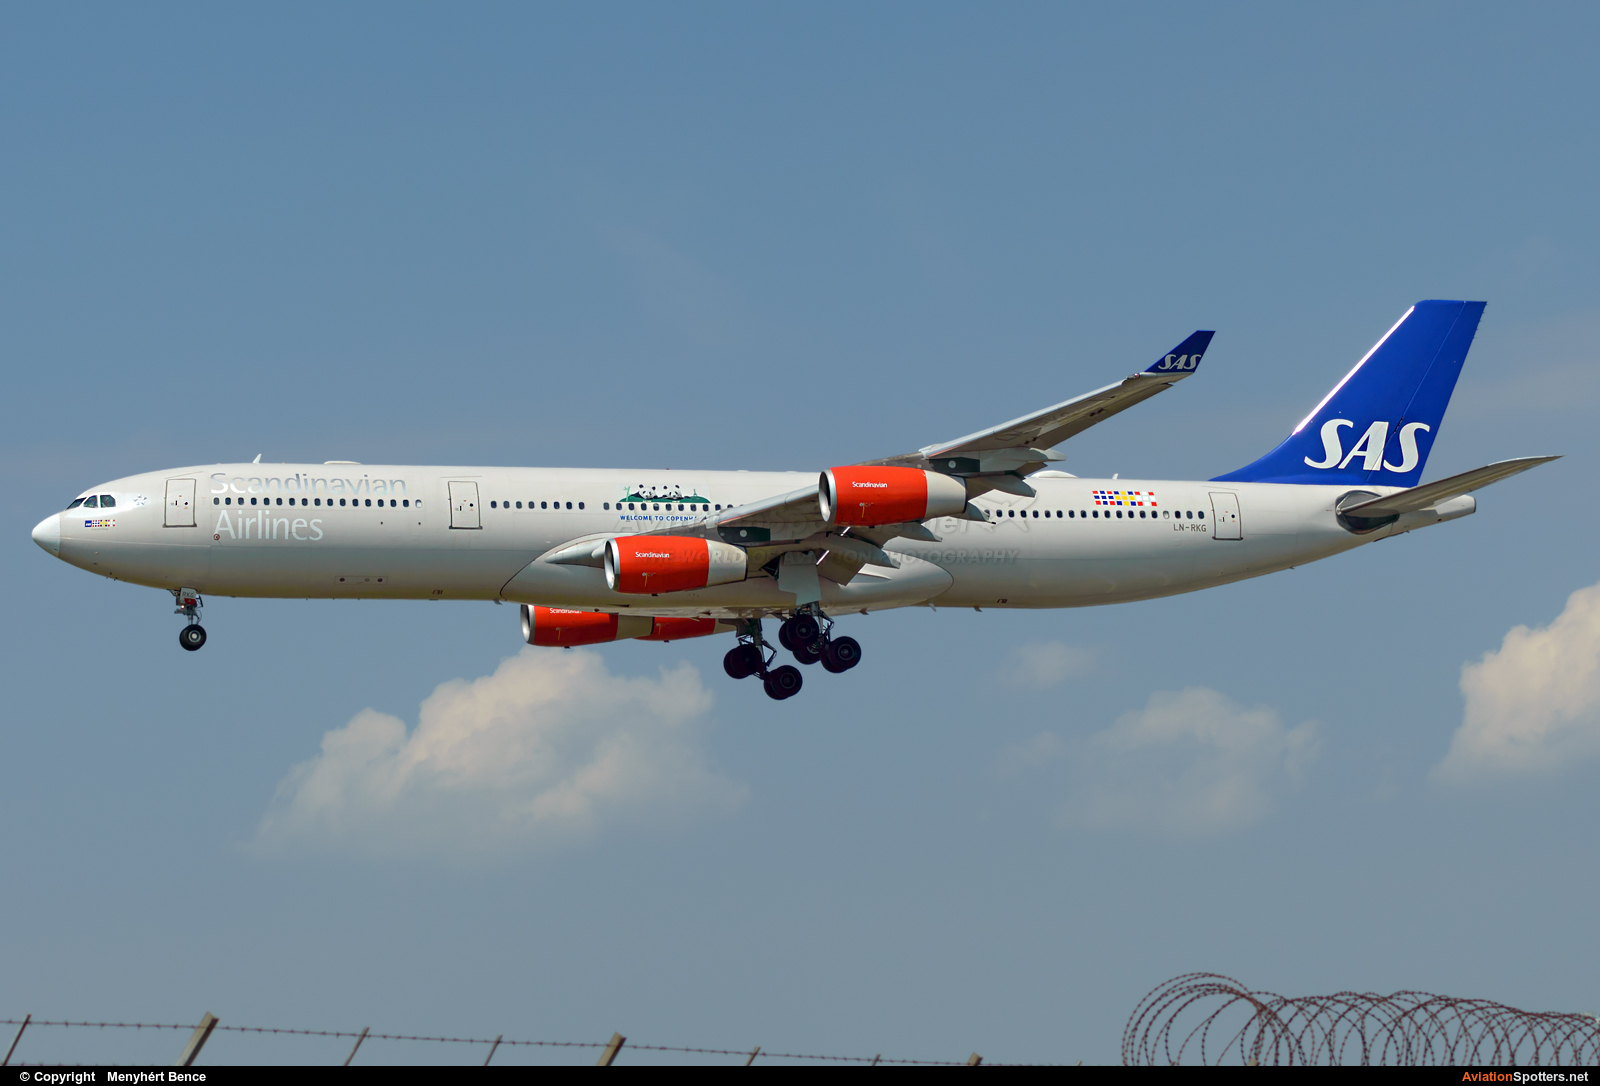 SAS - Scandinavian Airlines  -  A340-300  (LN-RKG) By Menyhért Bence (hadesdras91)